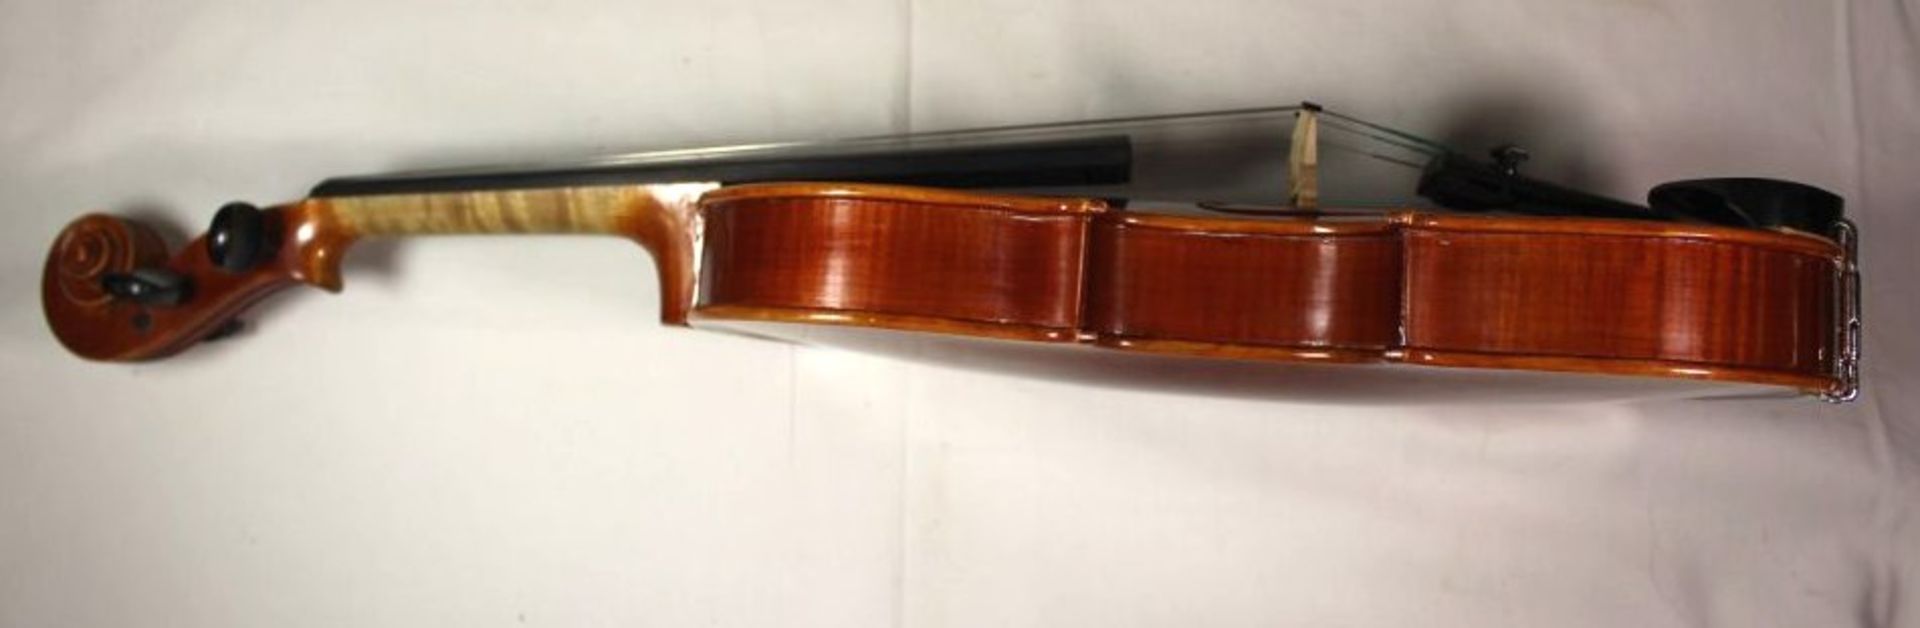 Geige, innen Klebeetikett "Intrumentenbau Mittenwald -Adorf", guter Zustand, anbei Bogen, L-57cm, in - Bild 3 aus 9